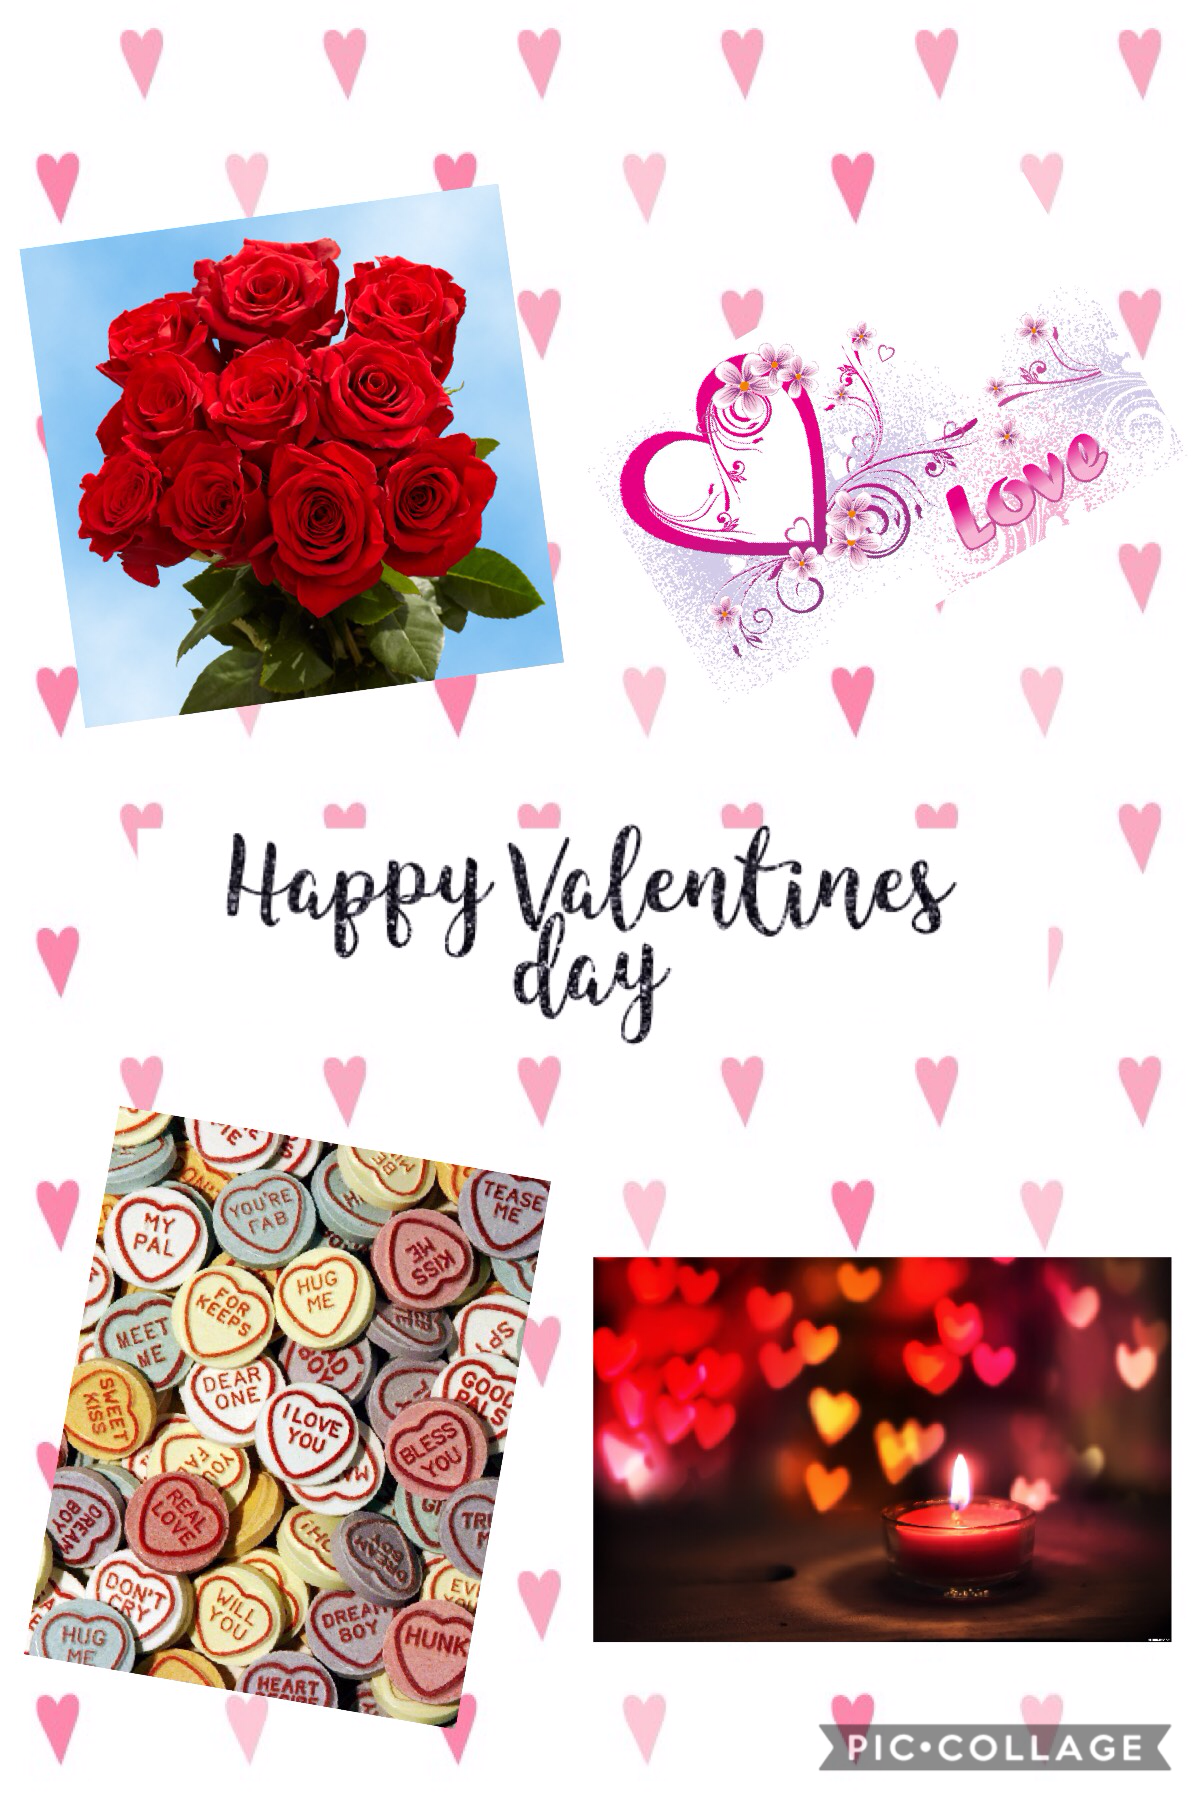 Happy Valentine's Day 💝 